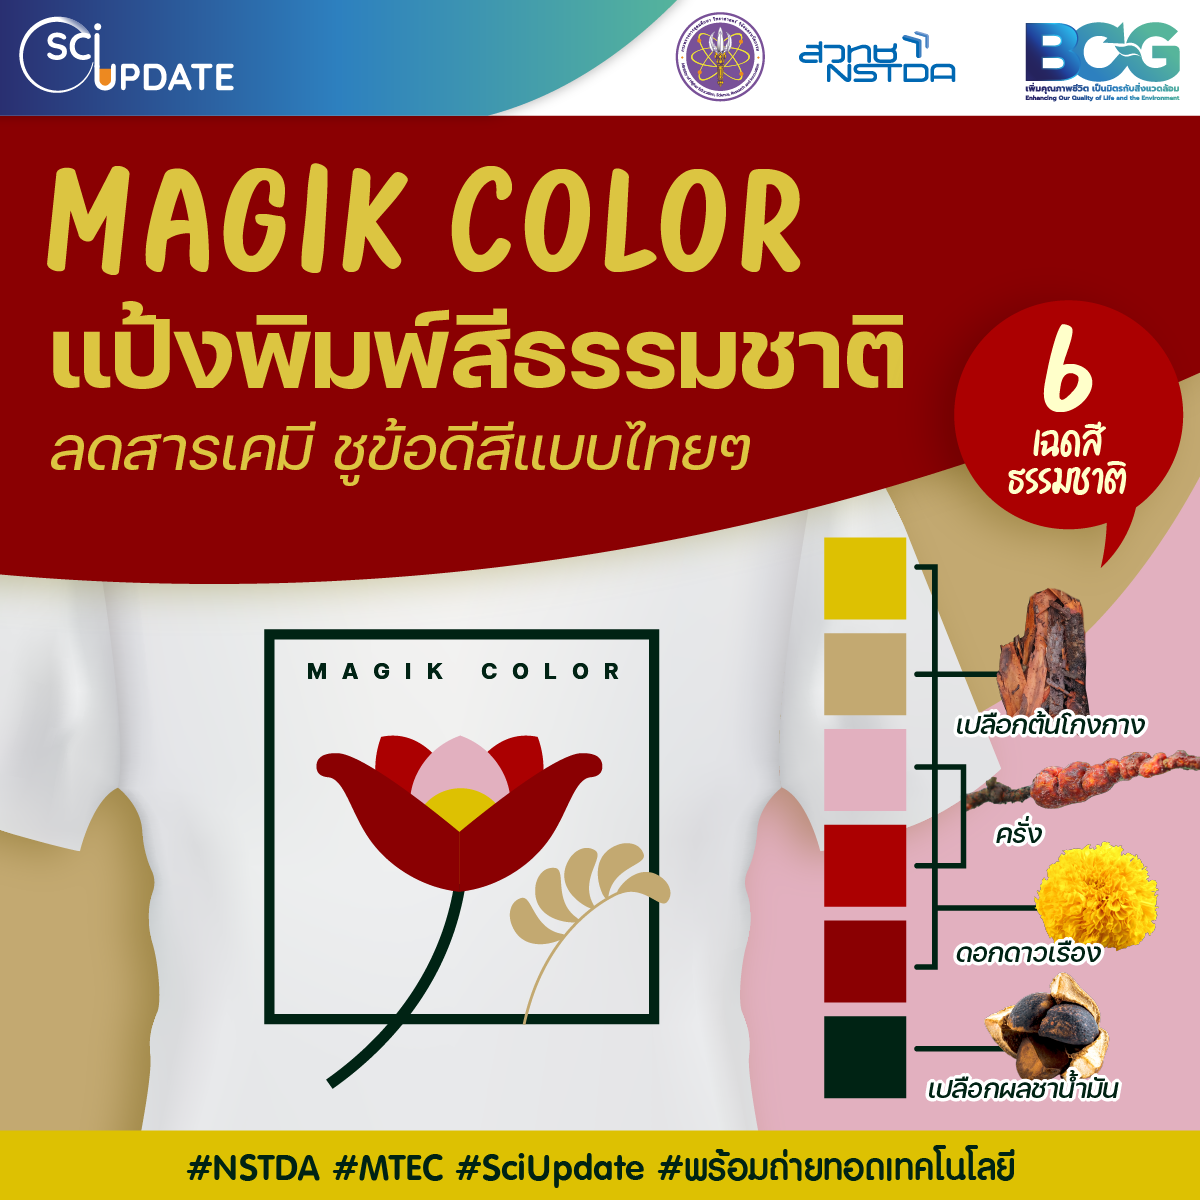 'Magik Color’ แป้งพิมพ์ผ้าจากสีธรรมชาติ ลดการใช้สารเคมี ชูข้อดีของสีแบบไทยๆ